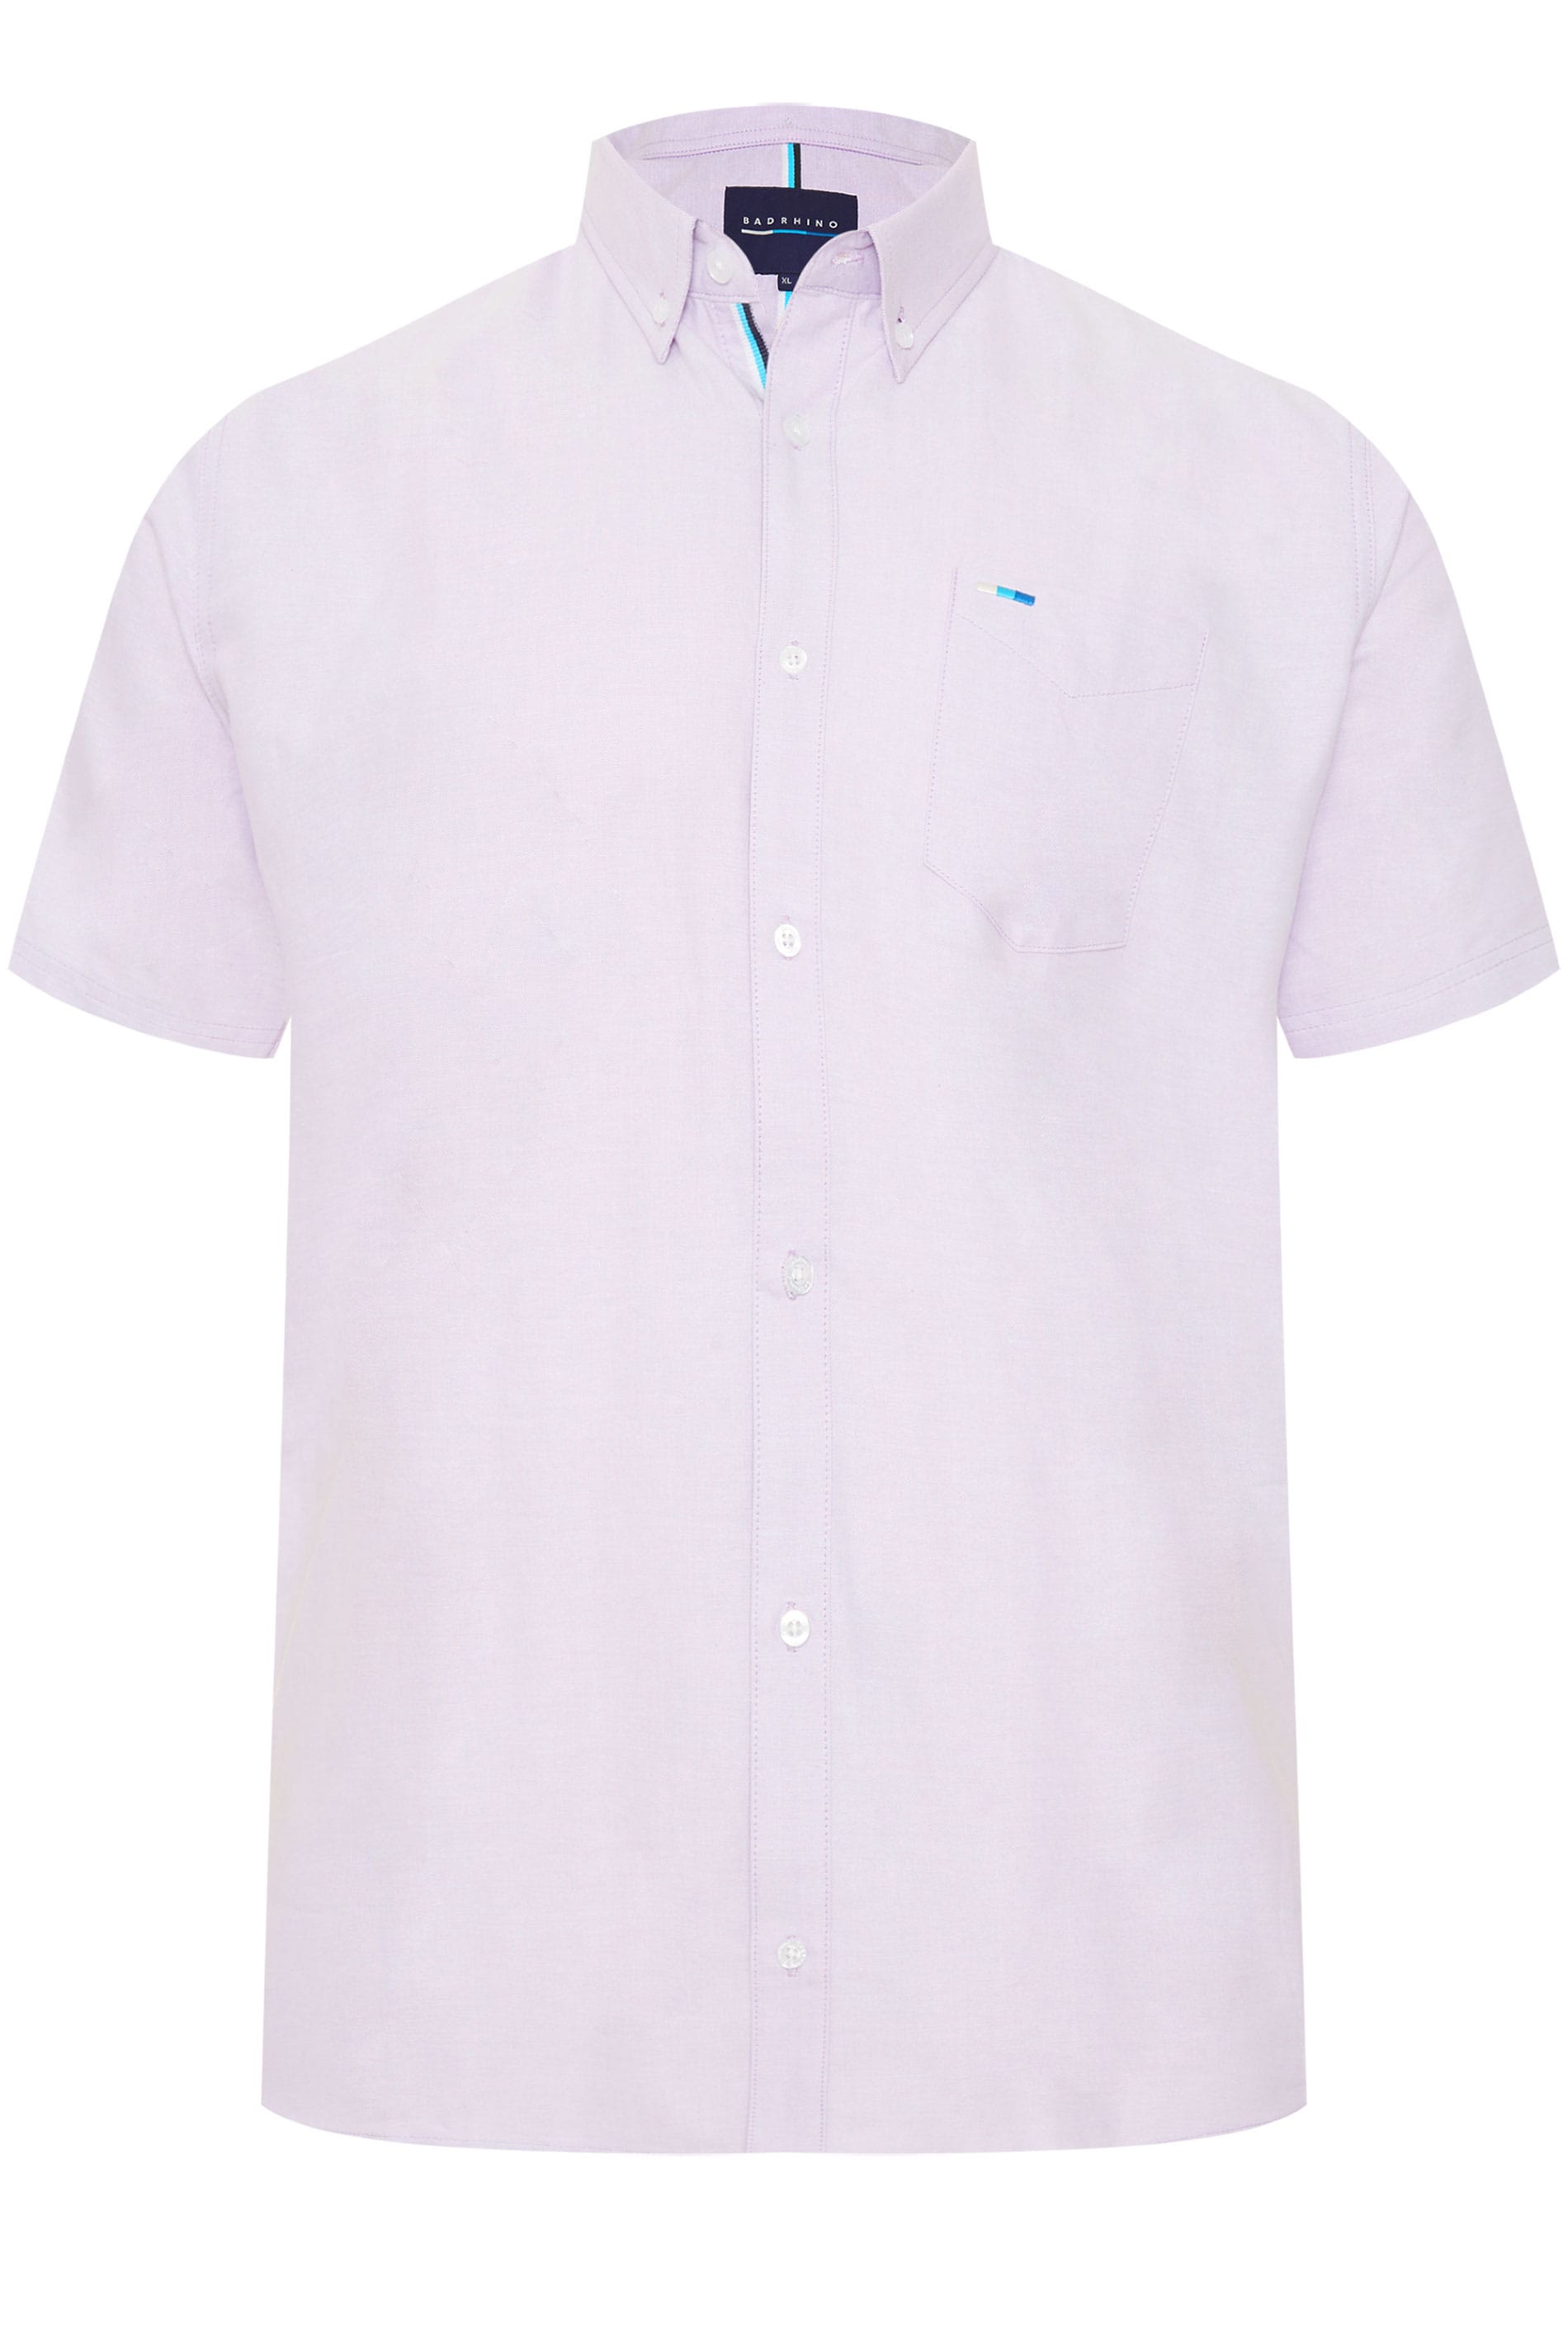 BadRhino Lilac Oxford Shirt_2518.jpg